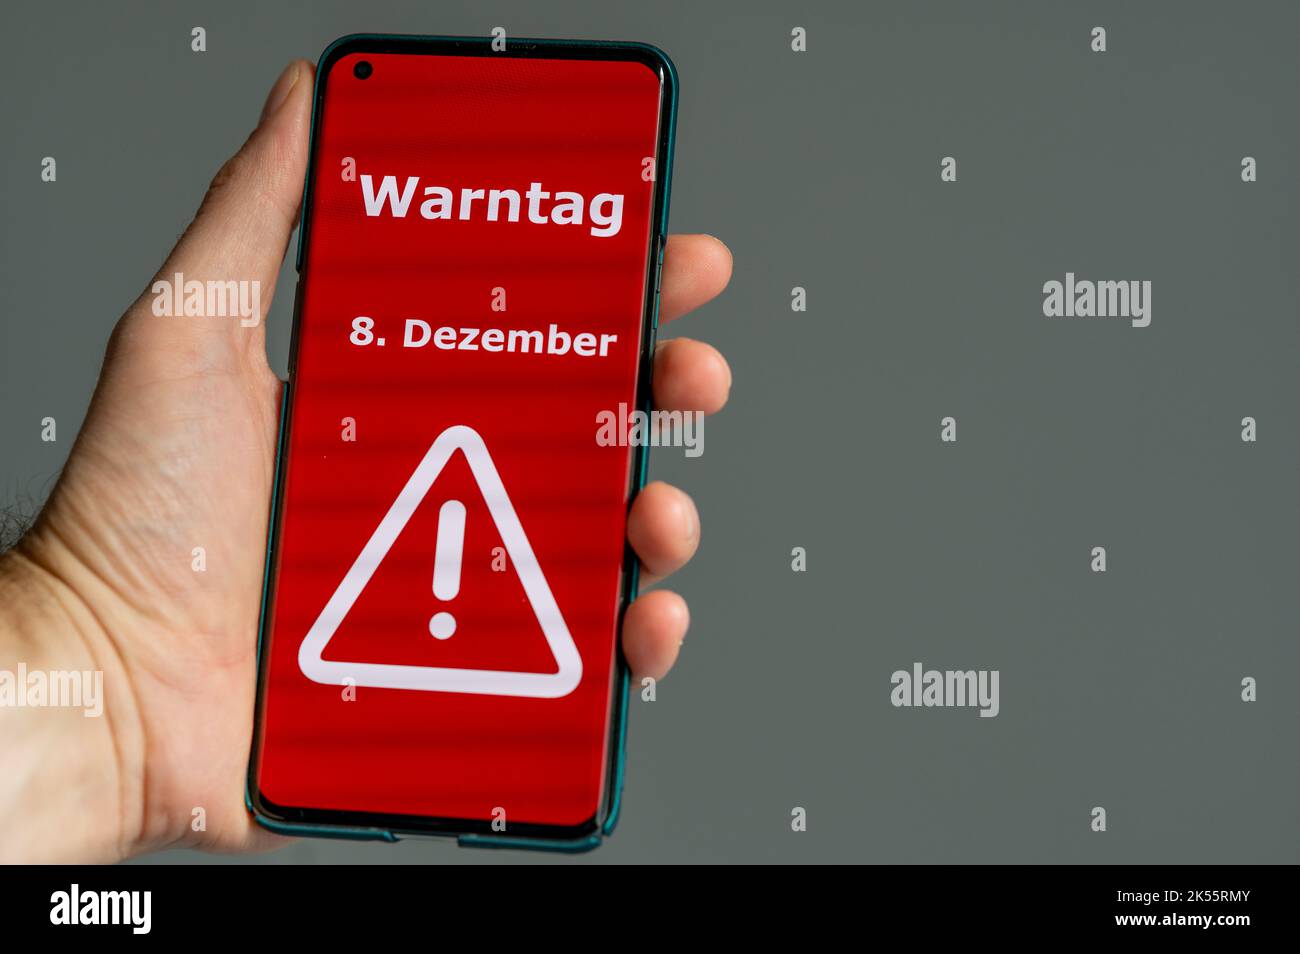 Symbol für den nationalen Warntag in Deutschland 2022. Hand hält ein Handy mit dem deutschen Text 'Warntag 8. Dezember' (Warntag am 8.. dezember Stockfoto